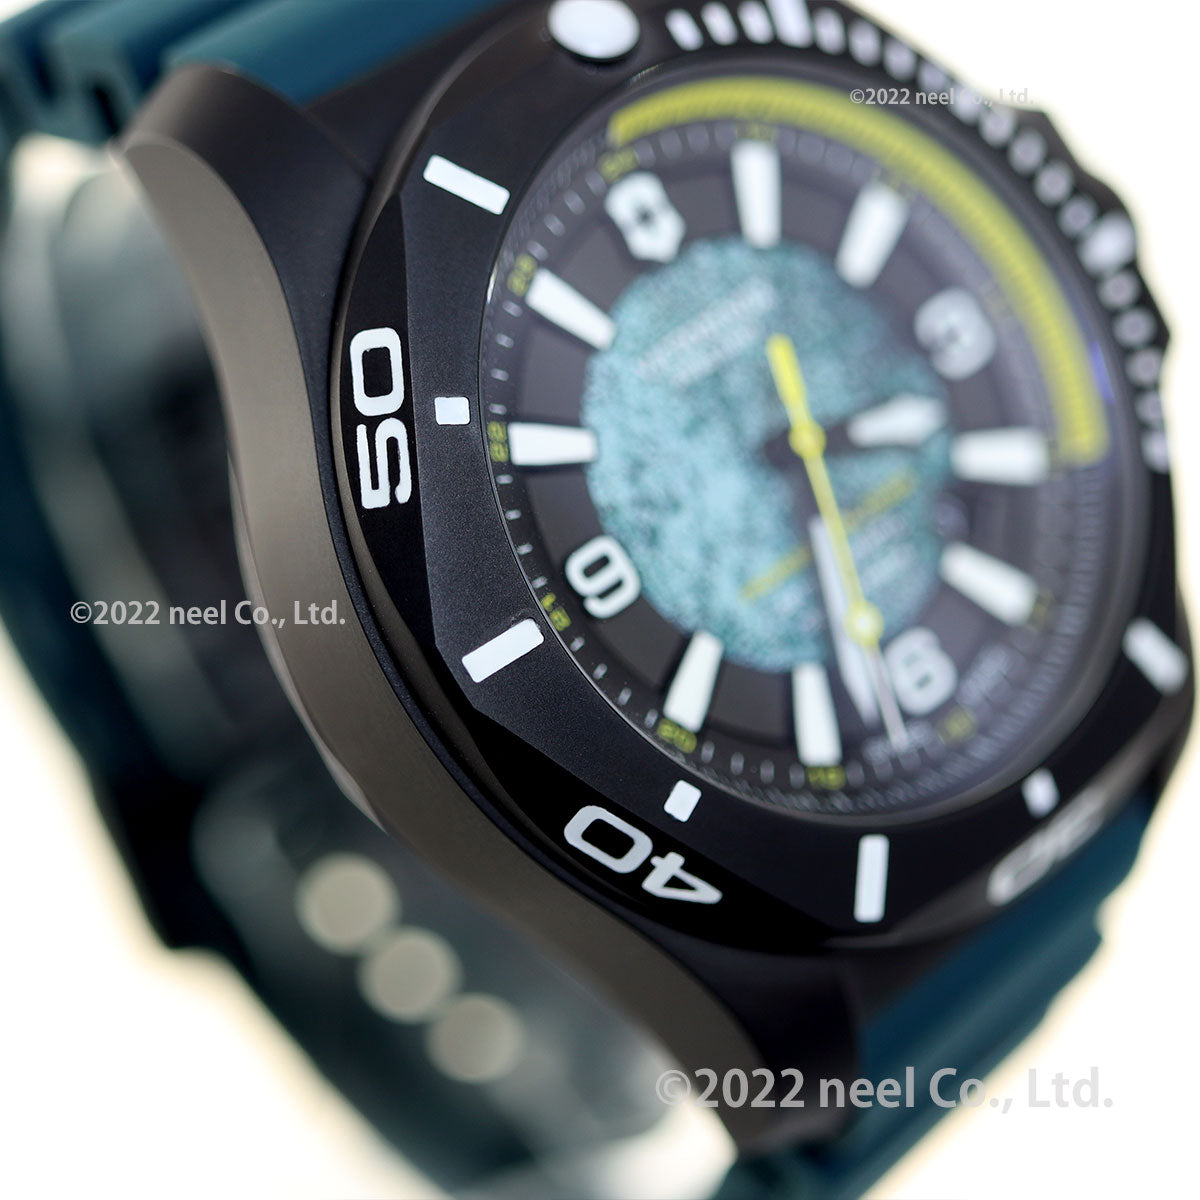 ビクトリノックス 時計 イノックス VICTORINOX 限定 腕時計 241957.1 プロフェッショナルダイバー リミテッドエディション I.N.O.X. マルチツールセット